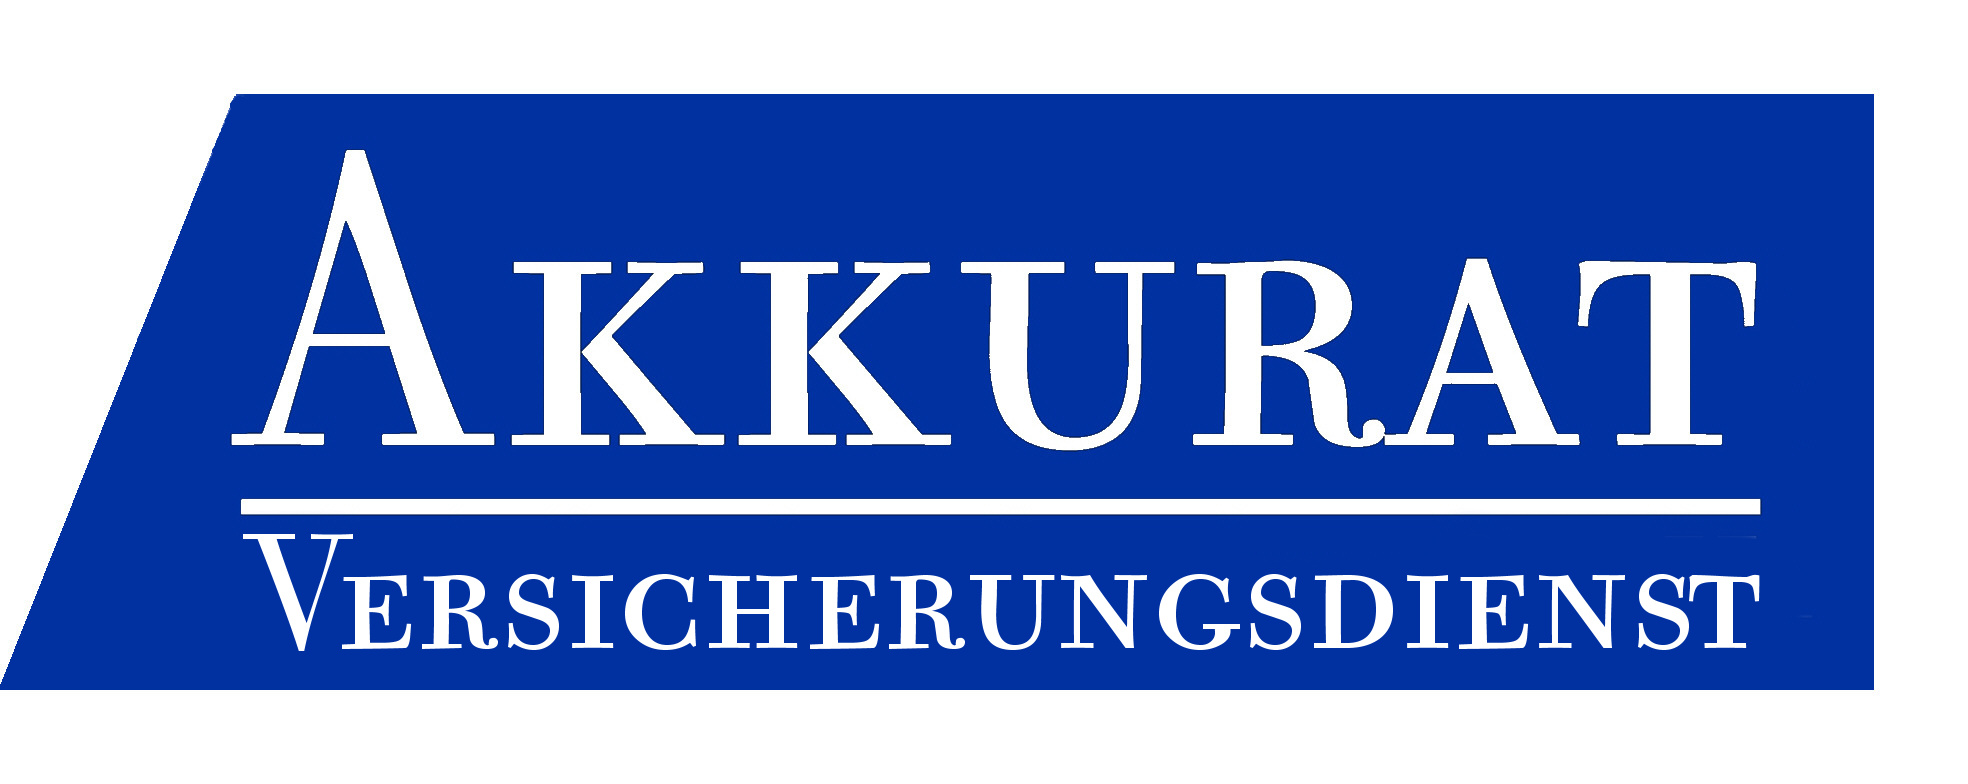 Logo Akkurat Versicherungsdienst